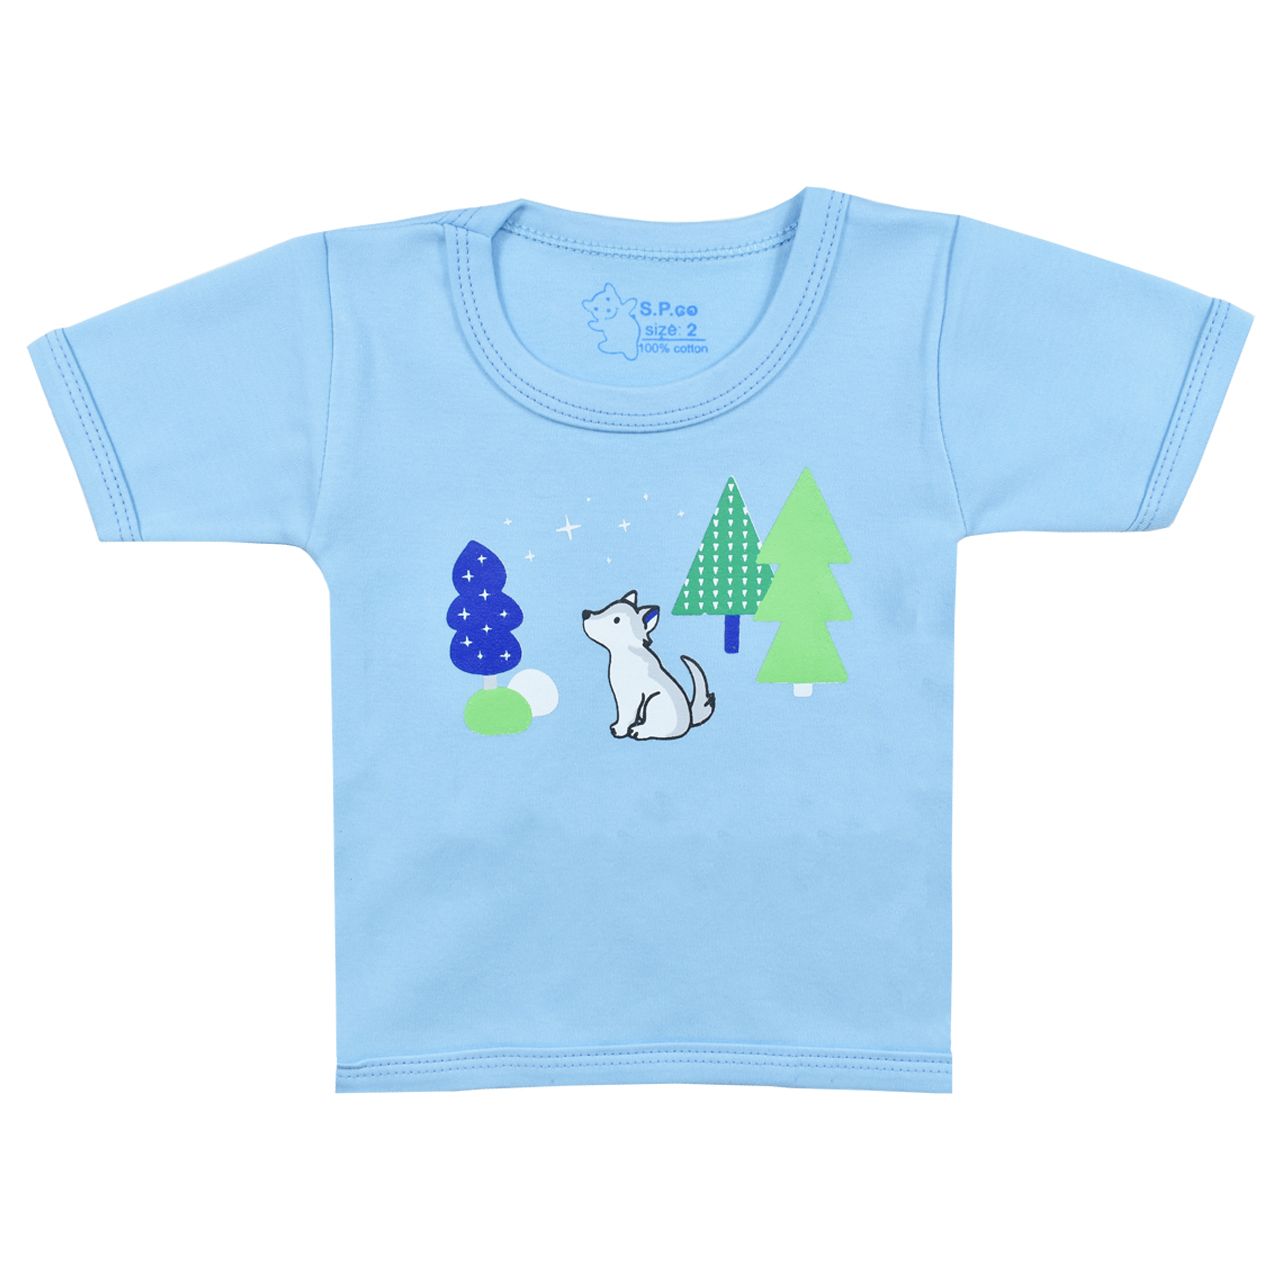 تی شرت آستین کوتاه نوزادی اسپیکو کد 301 -5 بسته دو عددی -  - 4